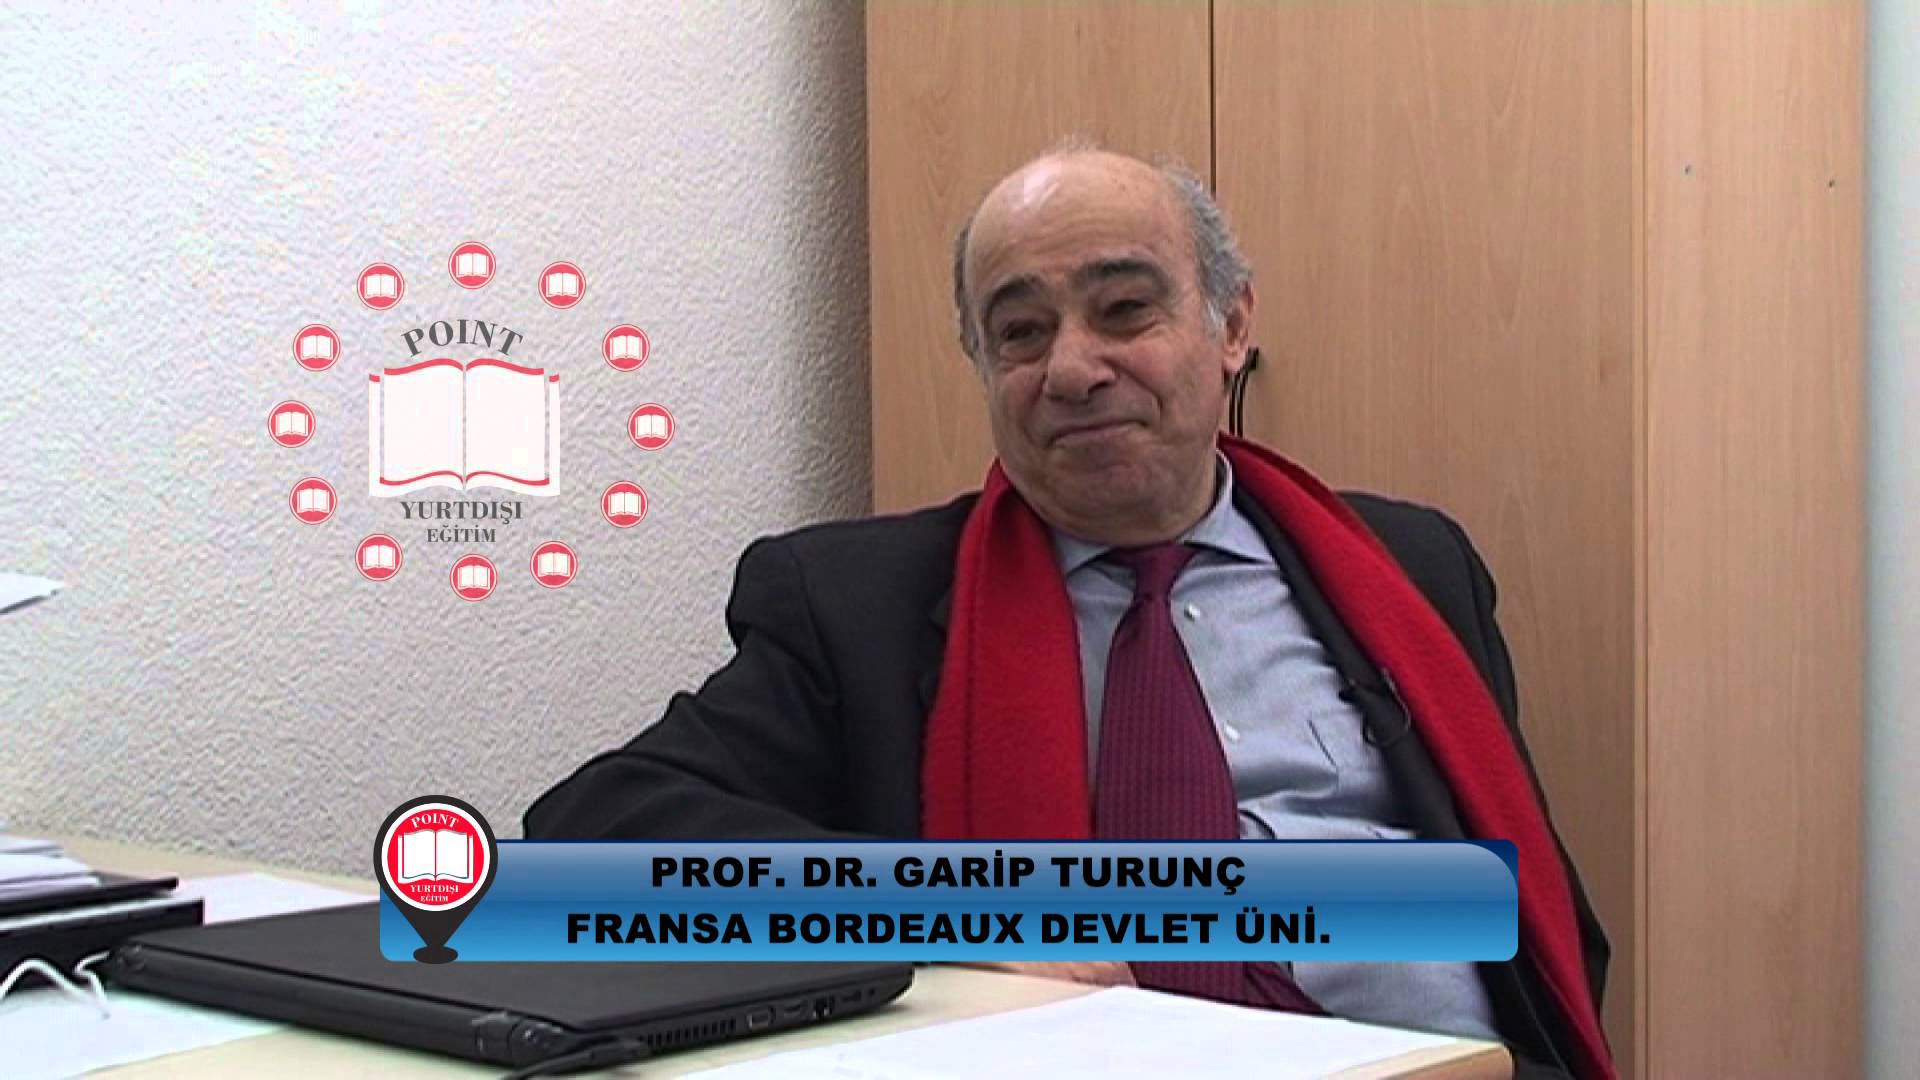 Bosna Hersek Üniversiteleri Prof. Dr. Garip Turunç